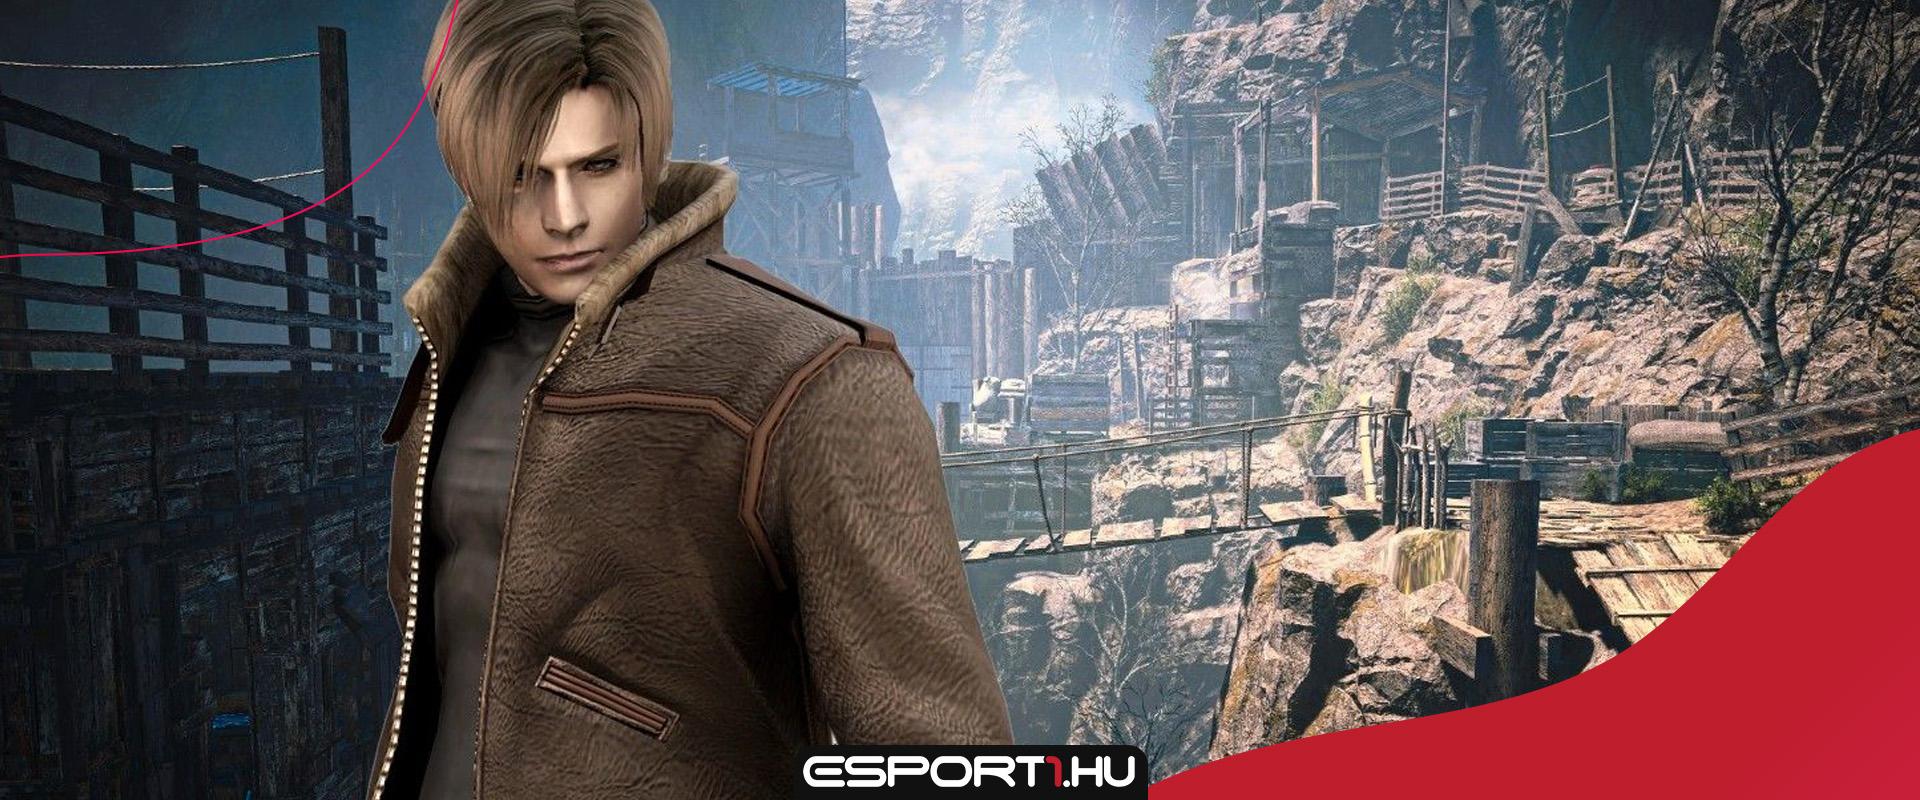 Újraalkották a Resident Evil 4 klasszikus pályáját a Far Cry 5-ben